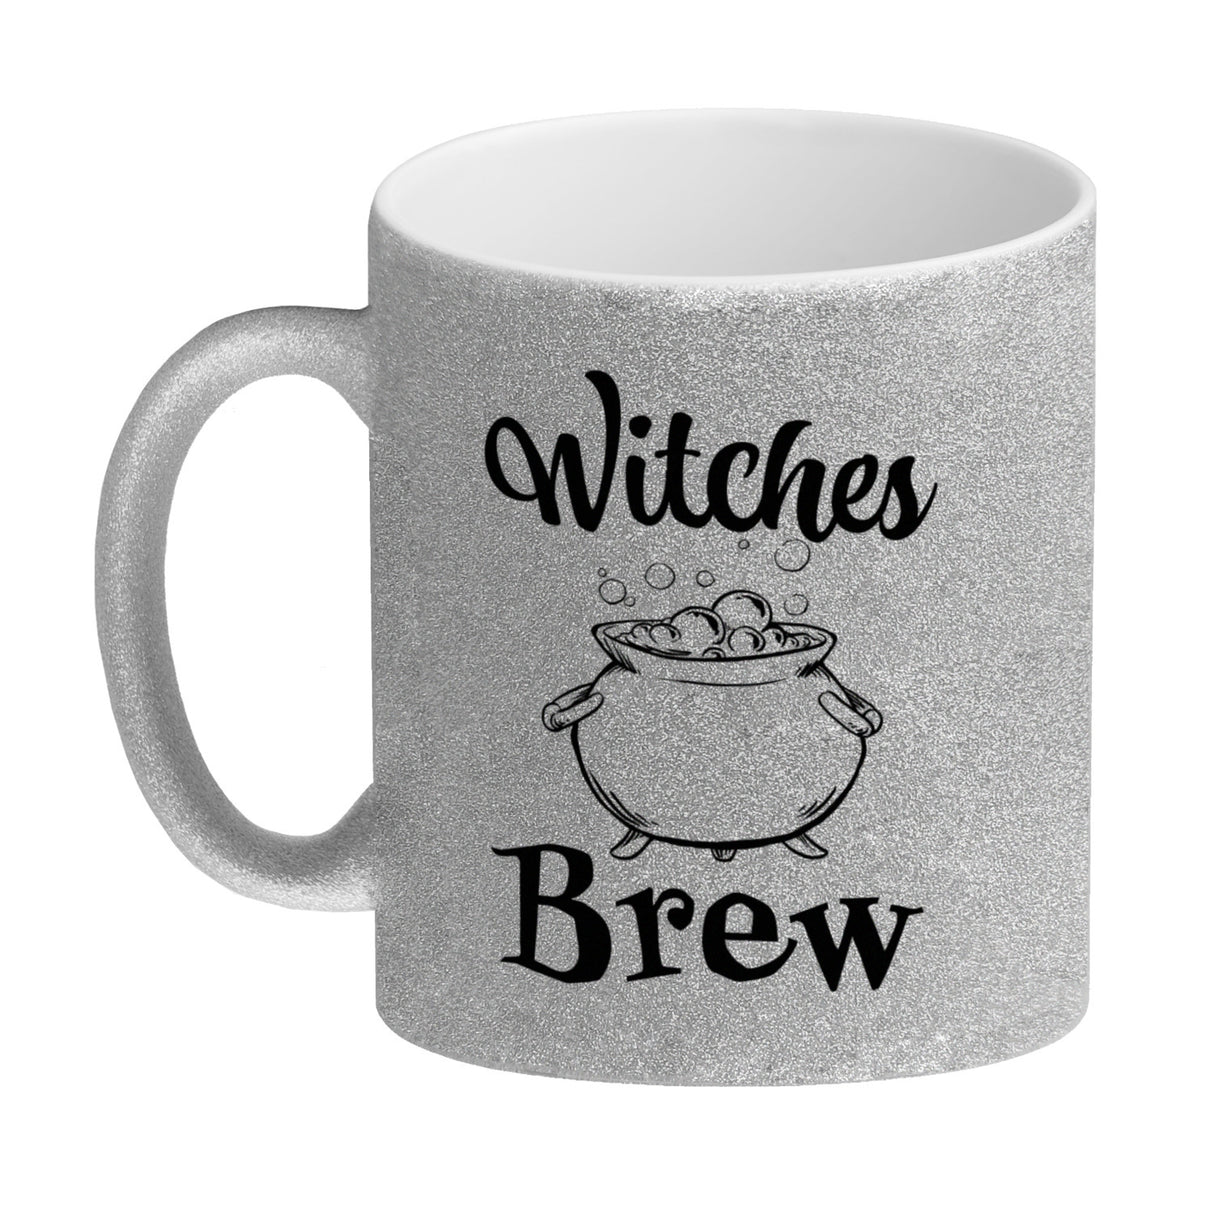 Kaffeebecher für Halloween mit Kessel-Motiv und Spruch - Witches Brew